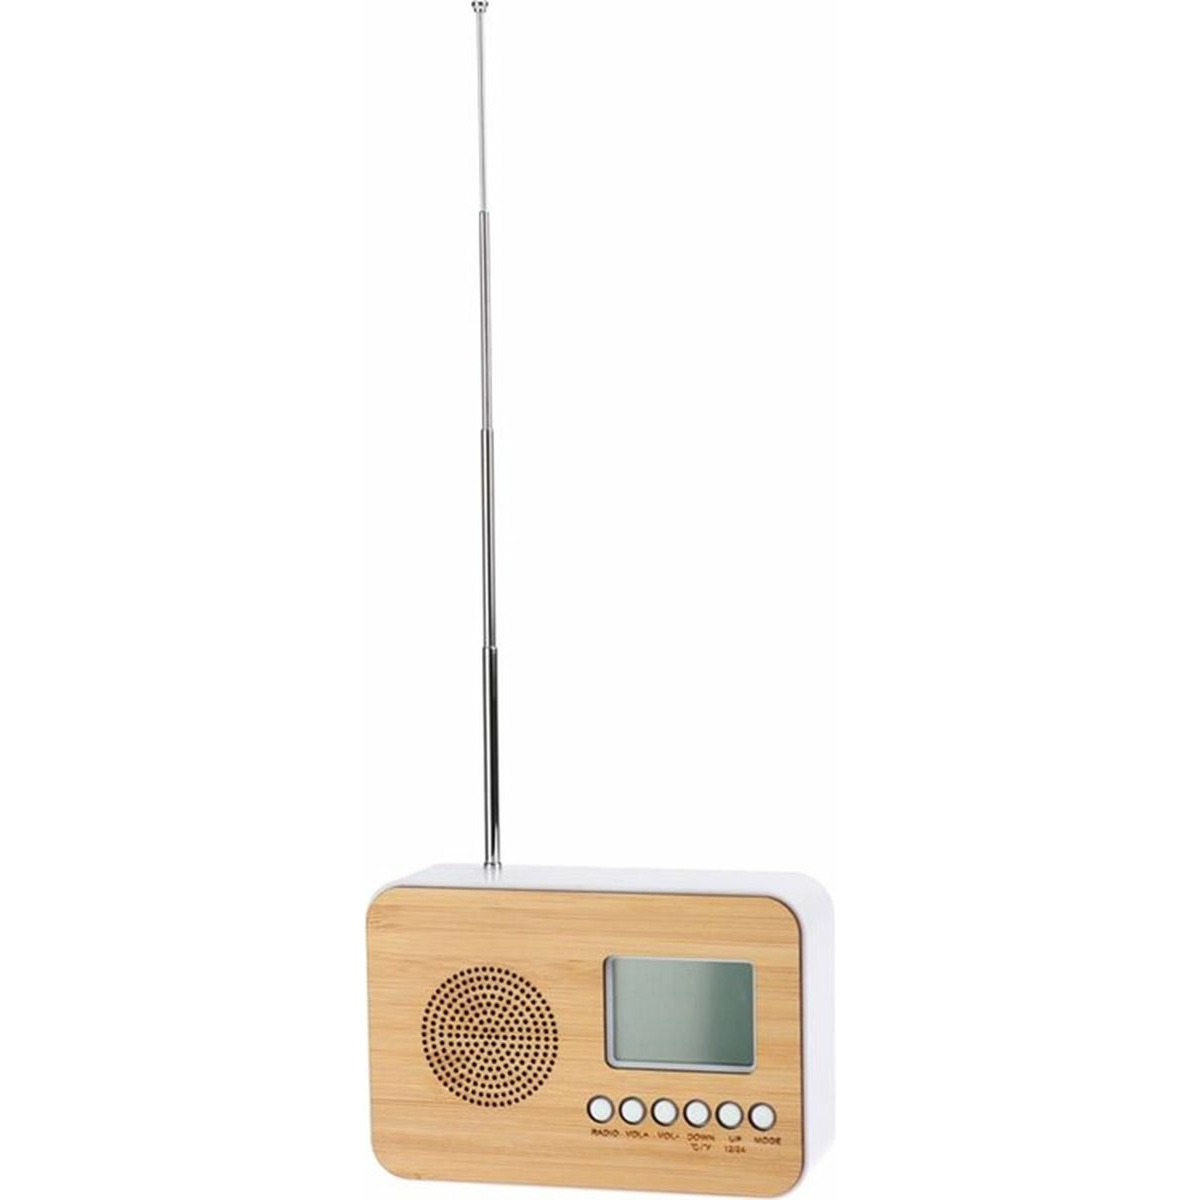 Excellent Houseware Digitale wekker naturel-wit kunststof  14 x 6 x 10 cm alarm klok